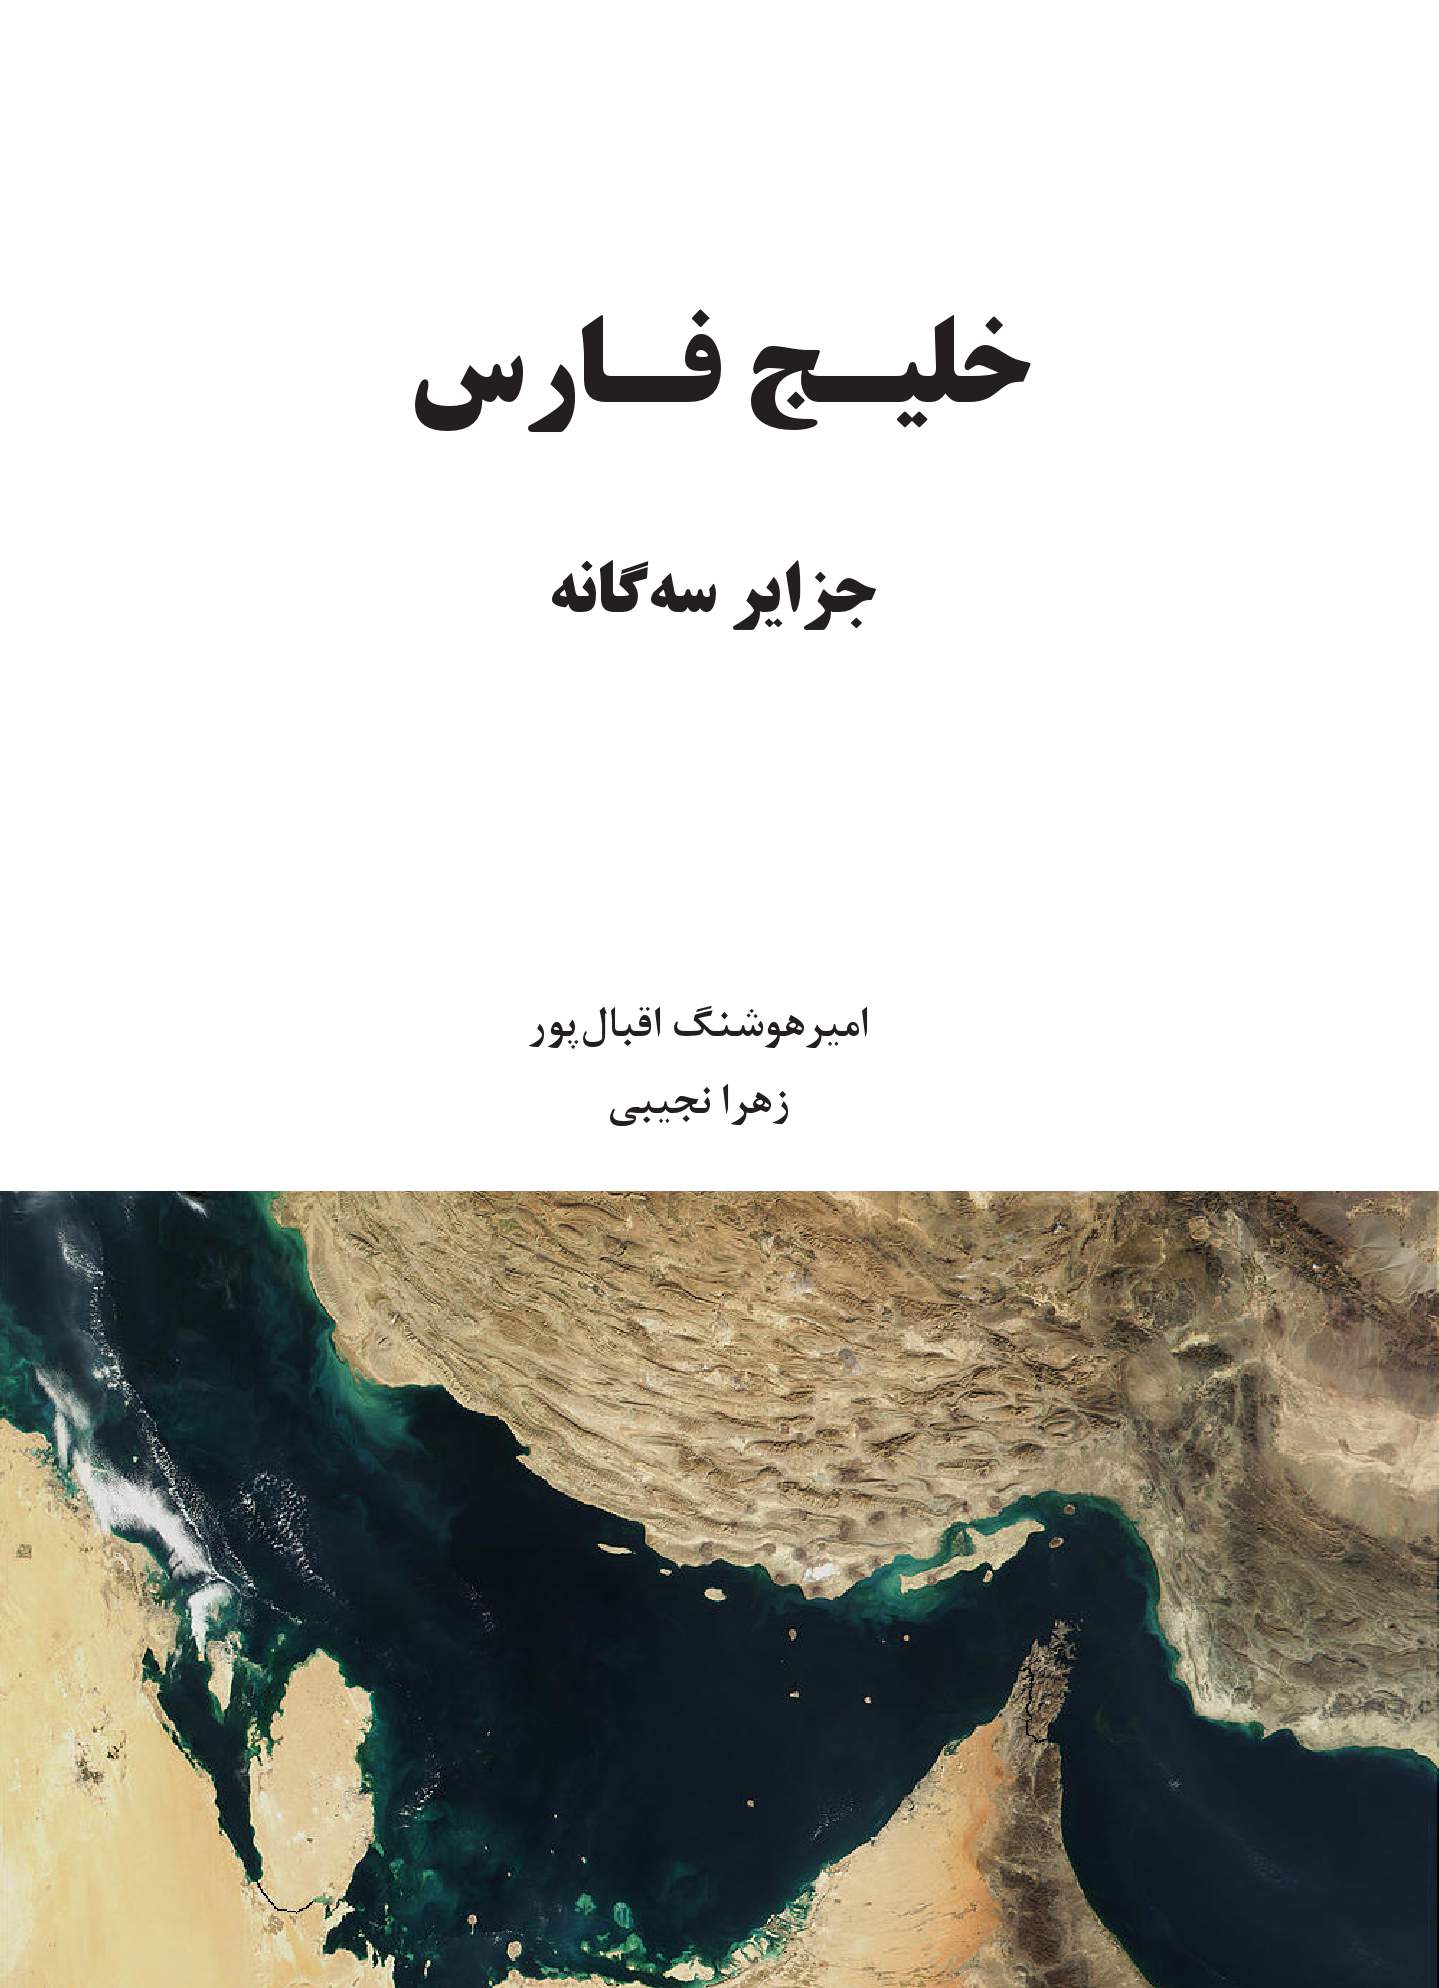 خلیج فارس - جزایر سه گانه | شبکه دانی